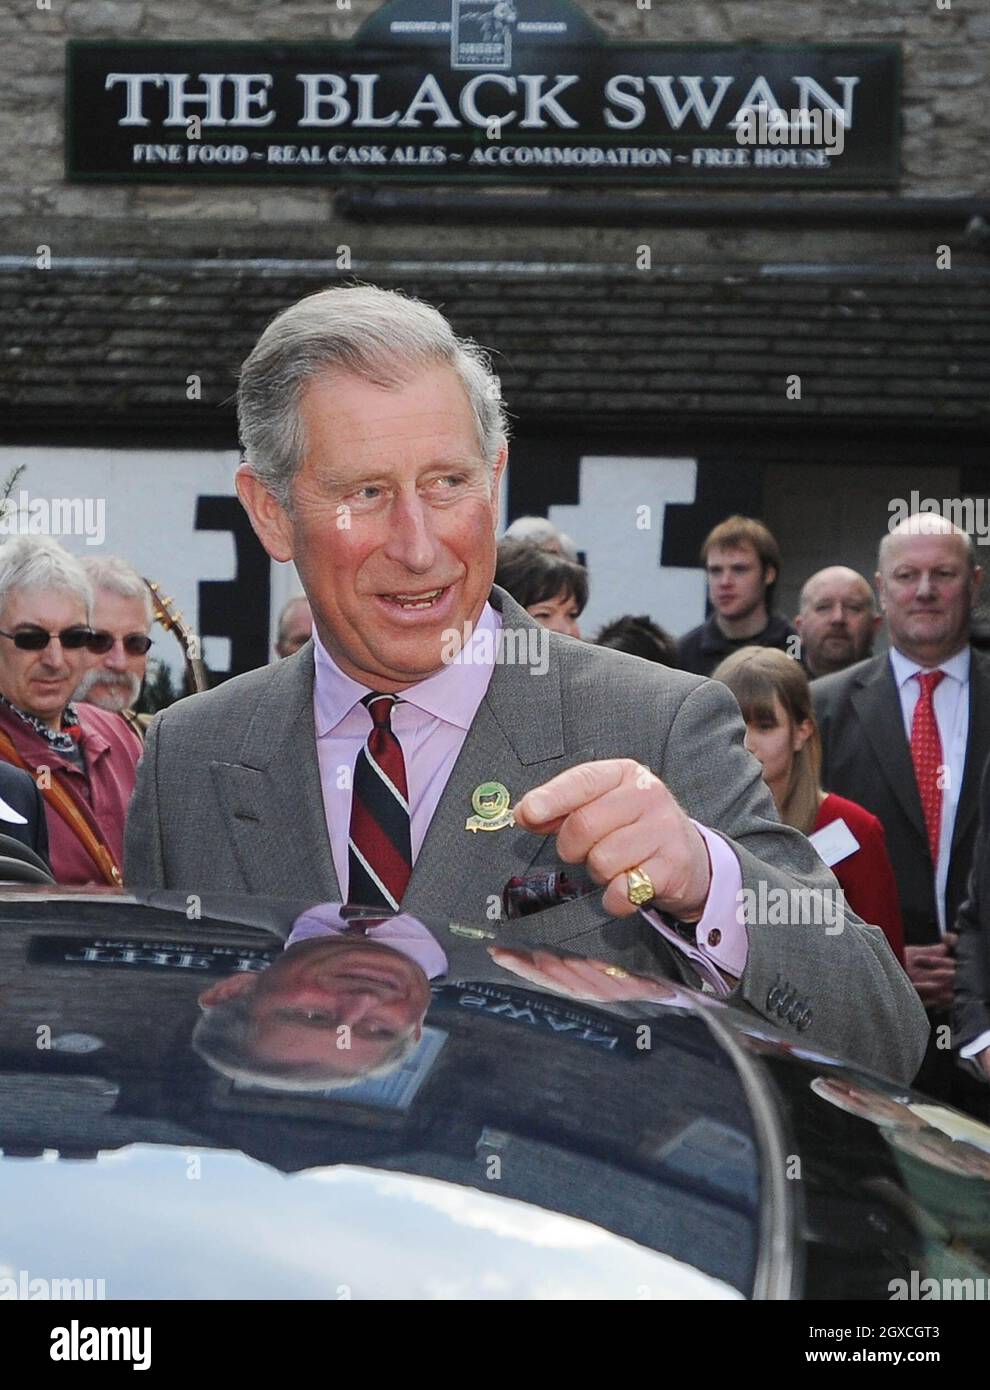 Prince Charles, Prince of Wales visita el pub, restaurante, hotel y bar Black Swan el 31 de marzo de 2008 en Ravenstonedale, Cumbria, Inglaterra. El Príncipe visitaba como parte de la iniciativa 'El Pub del Príncipe es el Hub' para apoyar y promover las comunidades rurales. Foto de stock